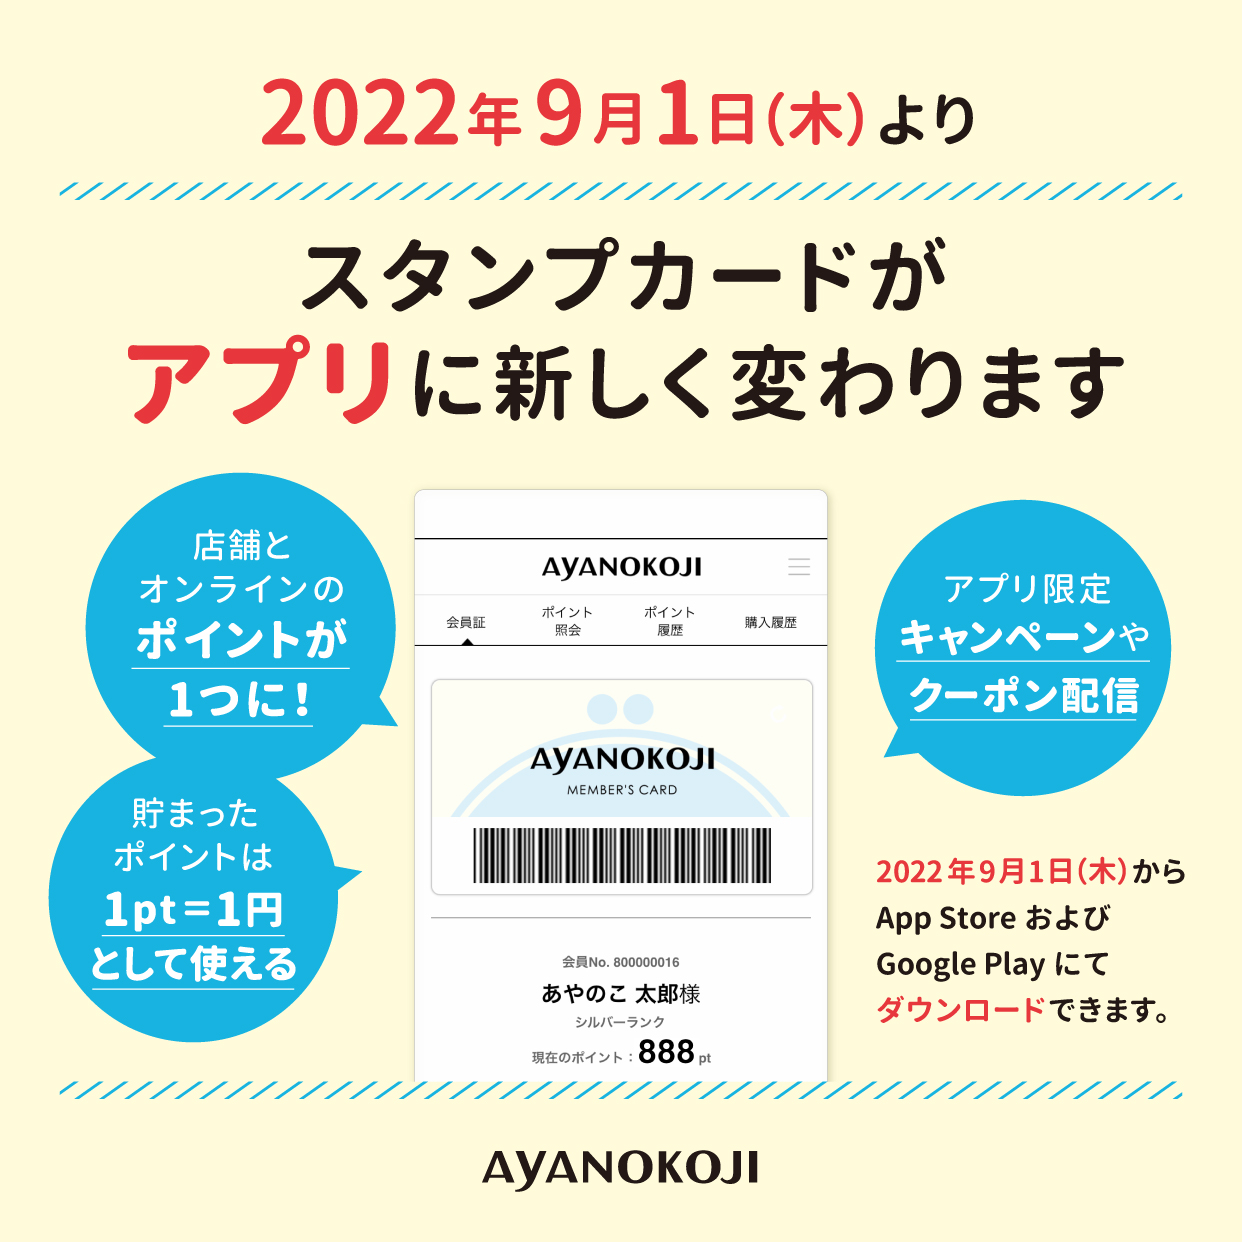 スタンプカードがアプリに変わります✨(2022.7.26更新) | AYANOKOJI